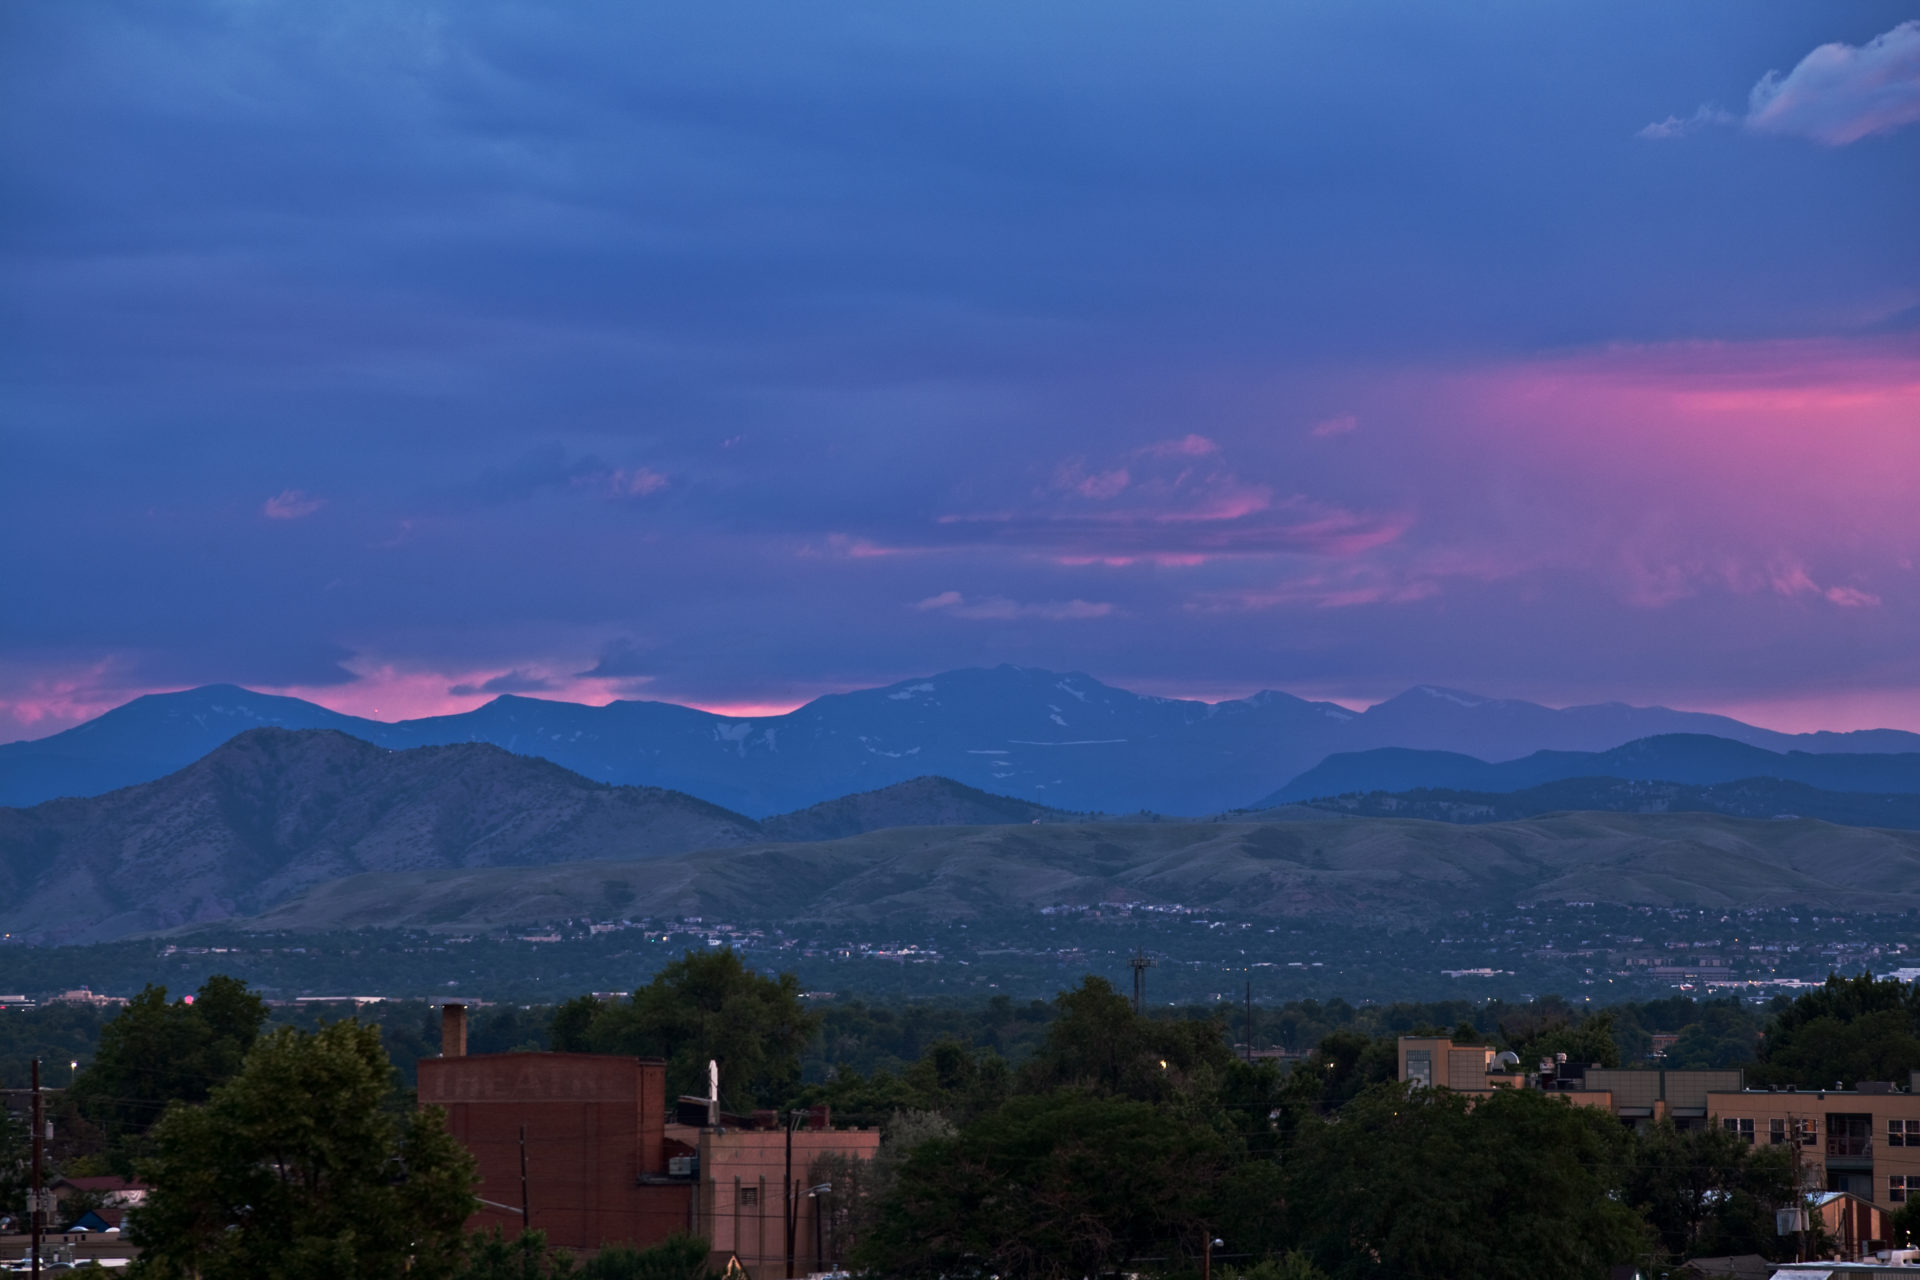 Mount Evans sunset - July 15, 2011